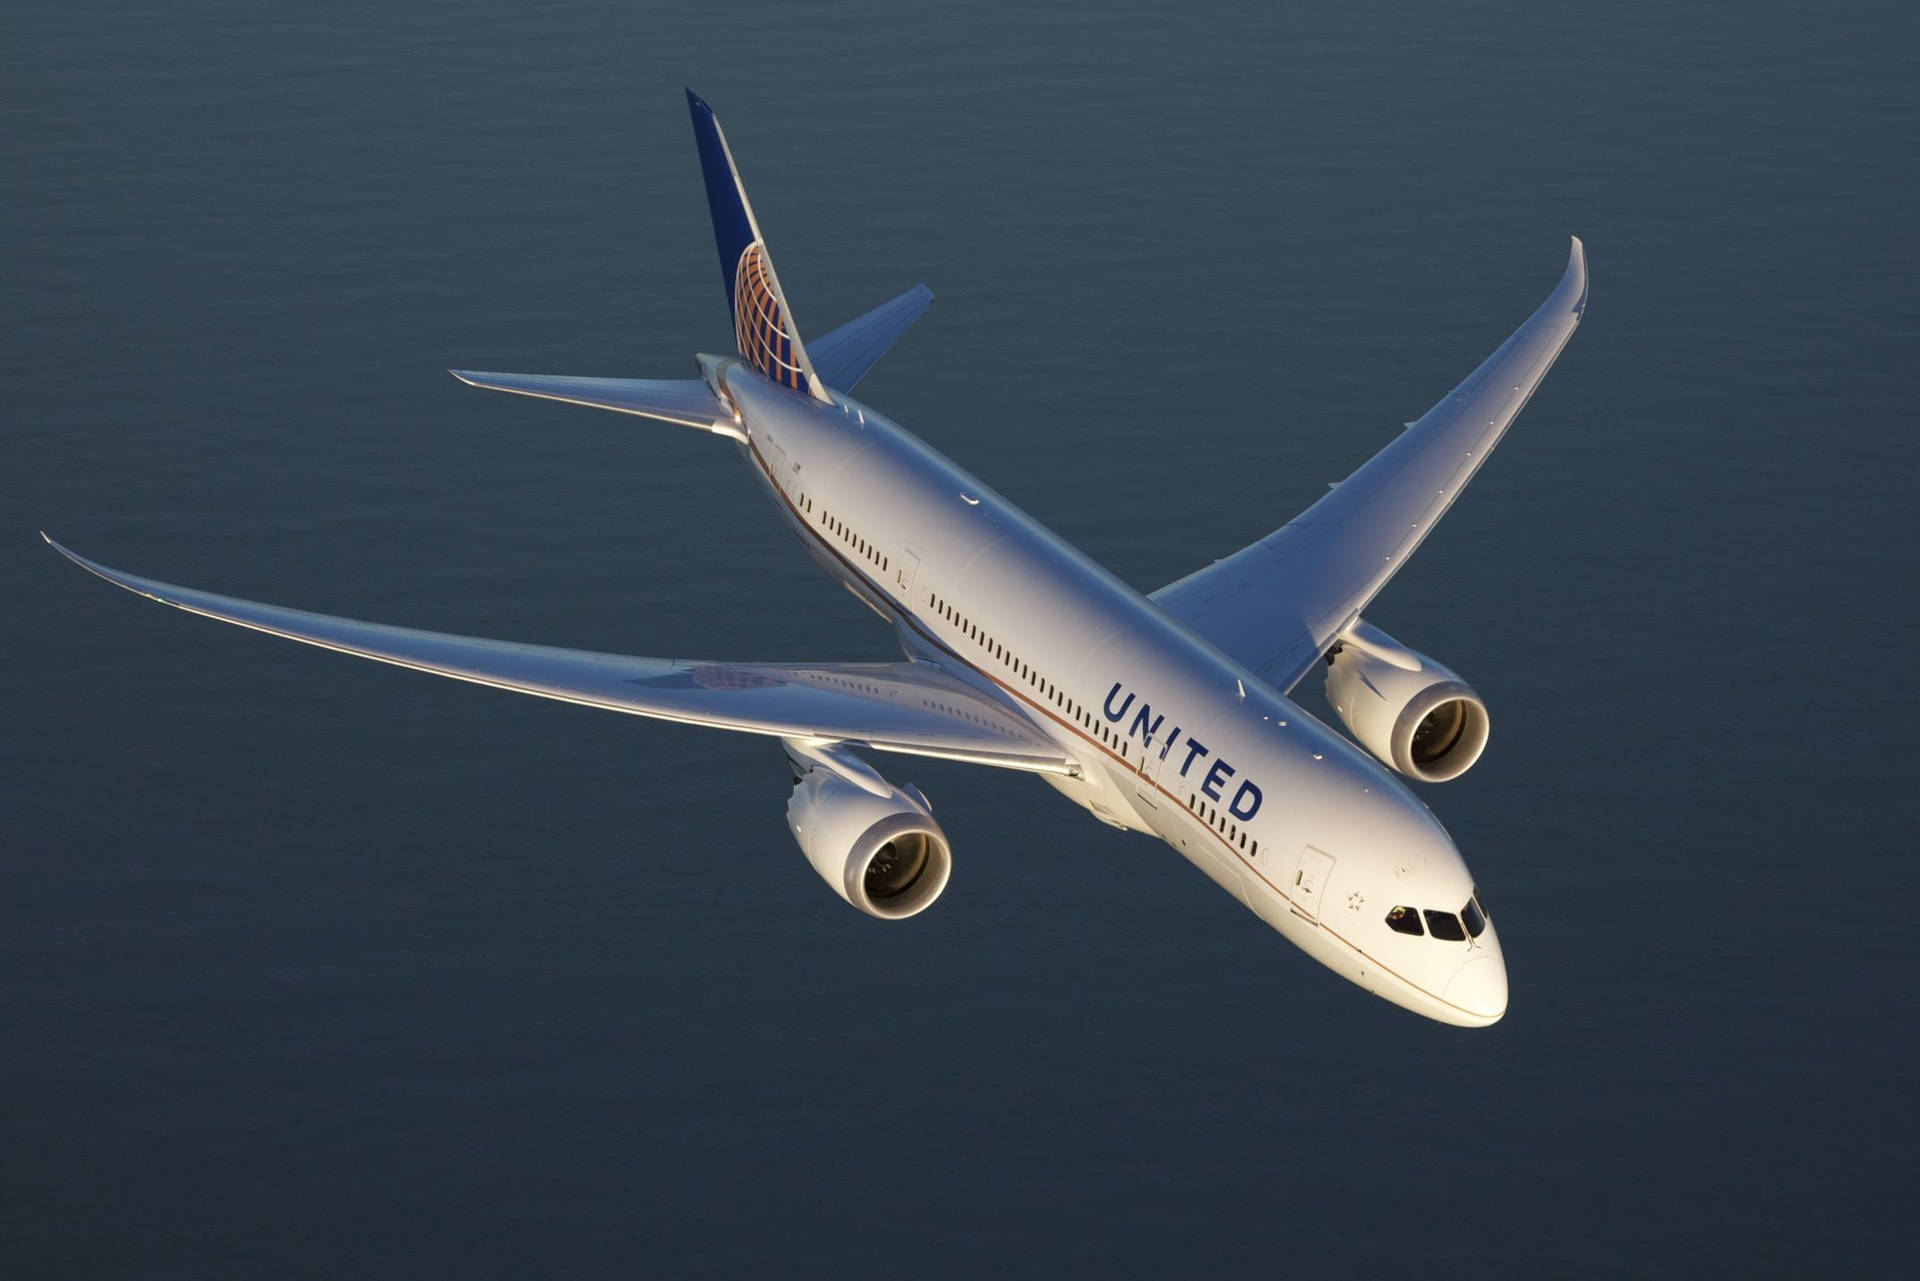 Vistaaérea De Un Avión De United Airlines Volando. Fondo de pantalla